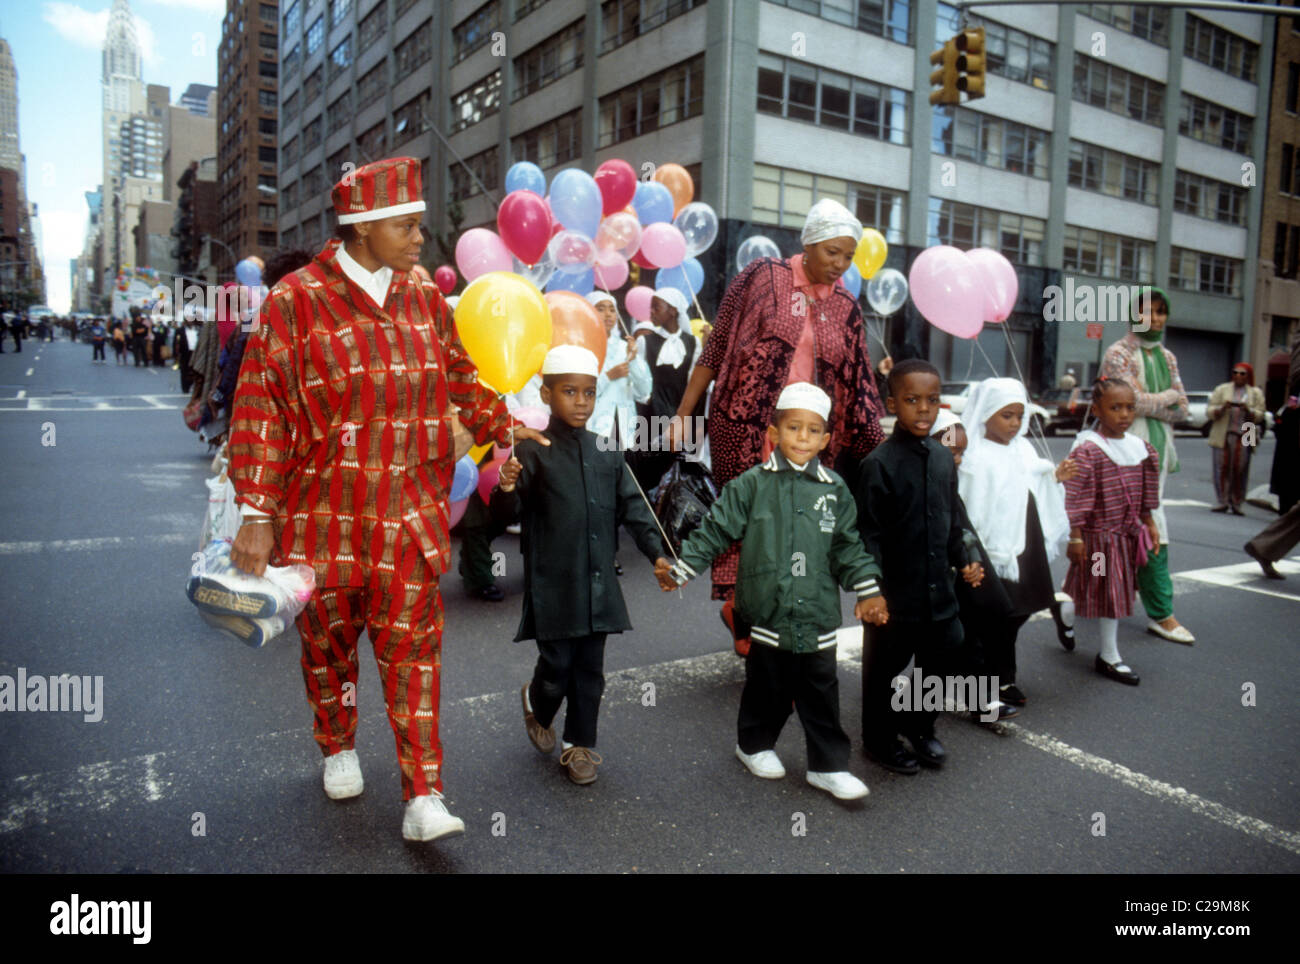 Les musulmans de la région des trois États se réunissent à New York en septembre 1990 pour le monde musulman Day Parade. (© Richard B. Levine) Banque D'Images